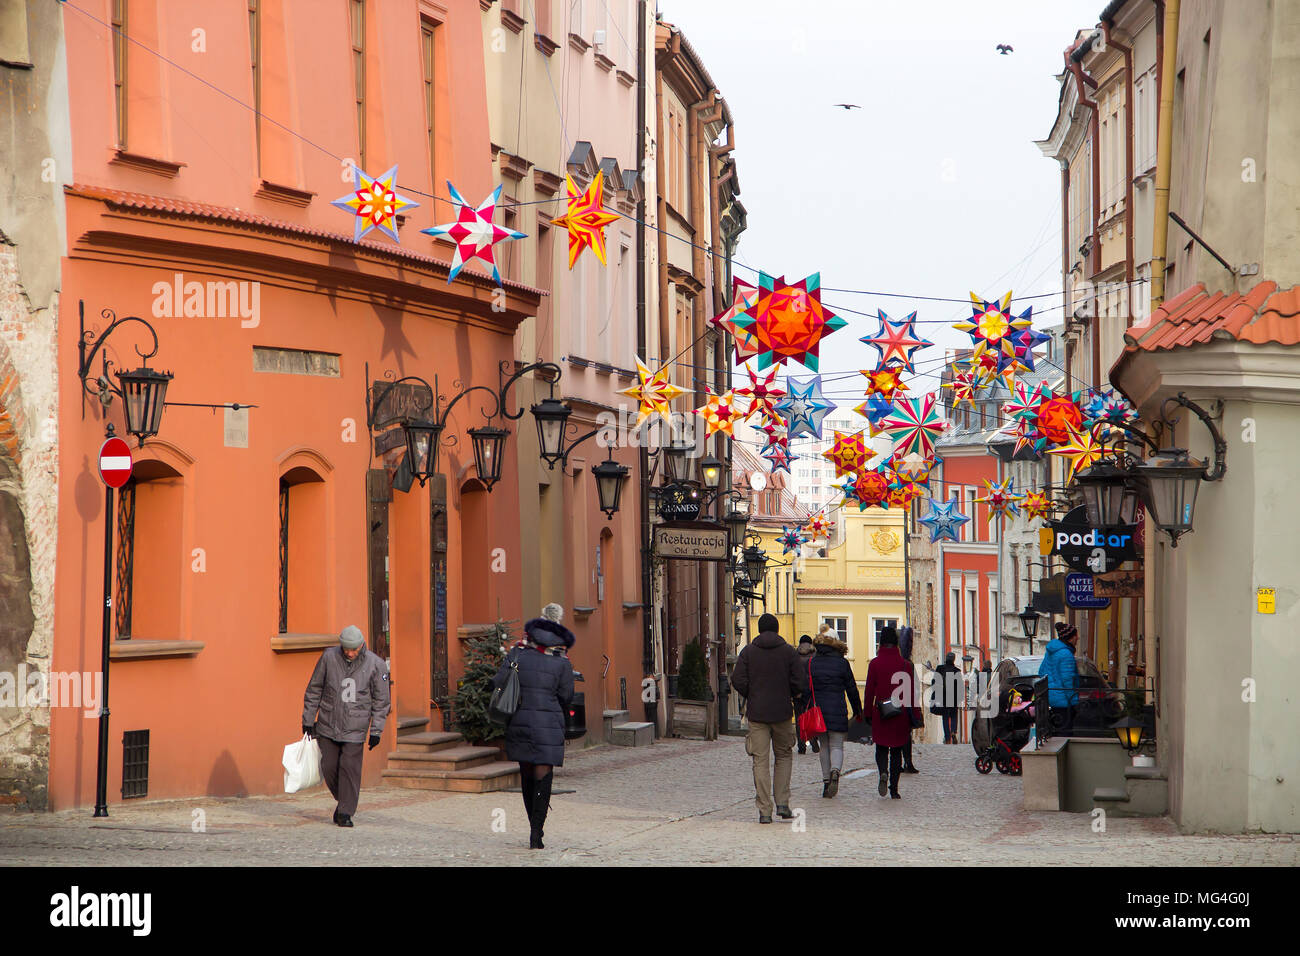 LUBLIN, Pologne - 16 janvier 2018 : rue Grodzka à Lublin, vieille ville avec des décorations de Noël Banque D'Images